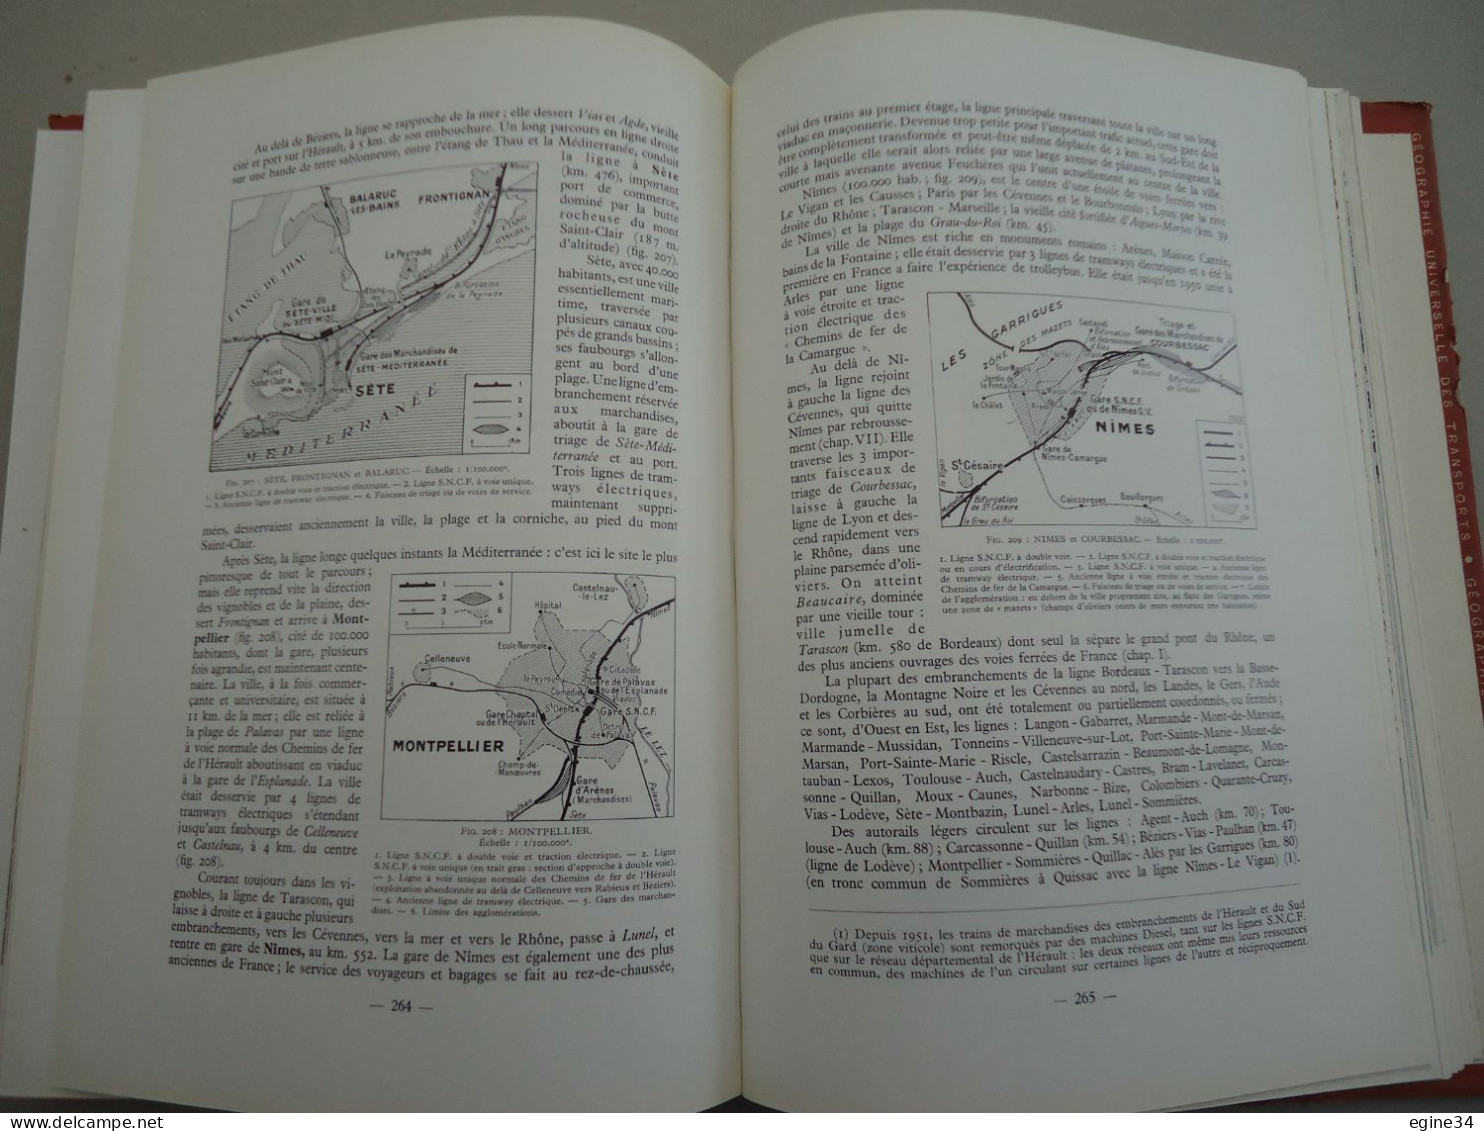 CHAIX - H. Lartilleux -Géographie des Chemins de Fer Français - SNCF Réseaux Divers -1959- Photos croquis cartes